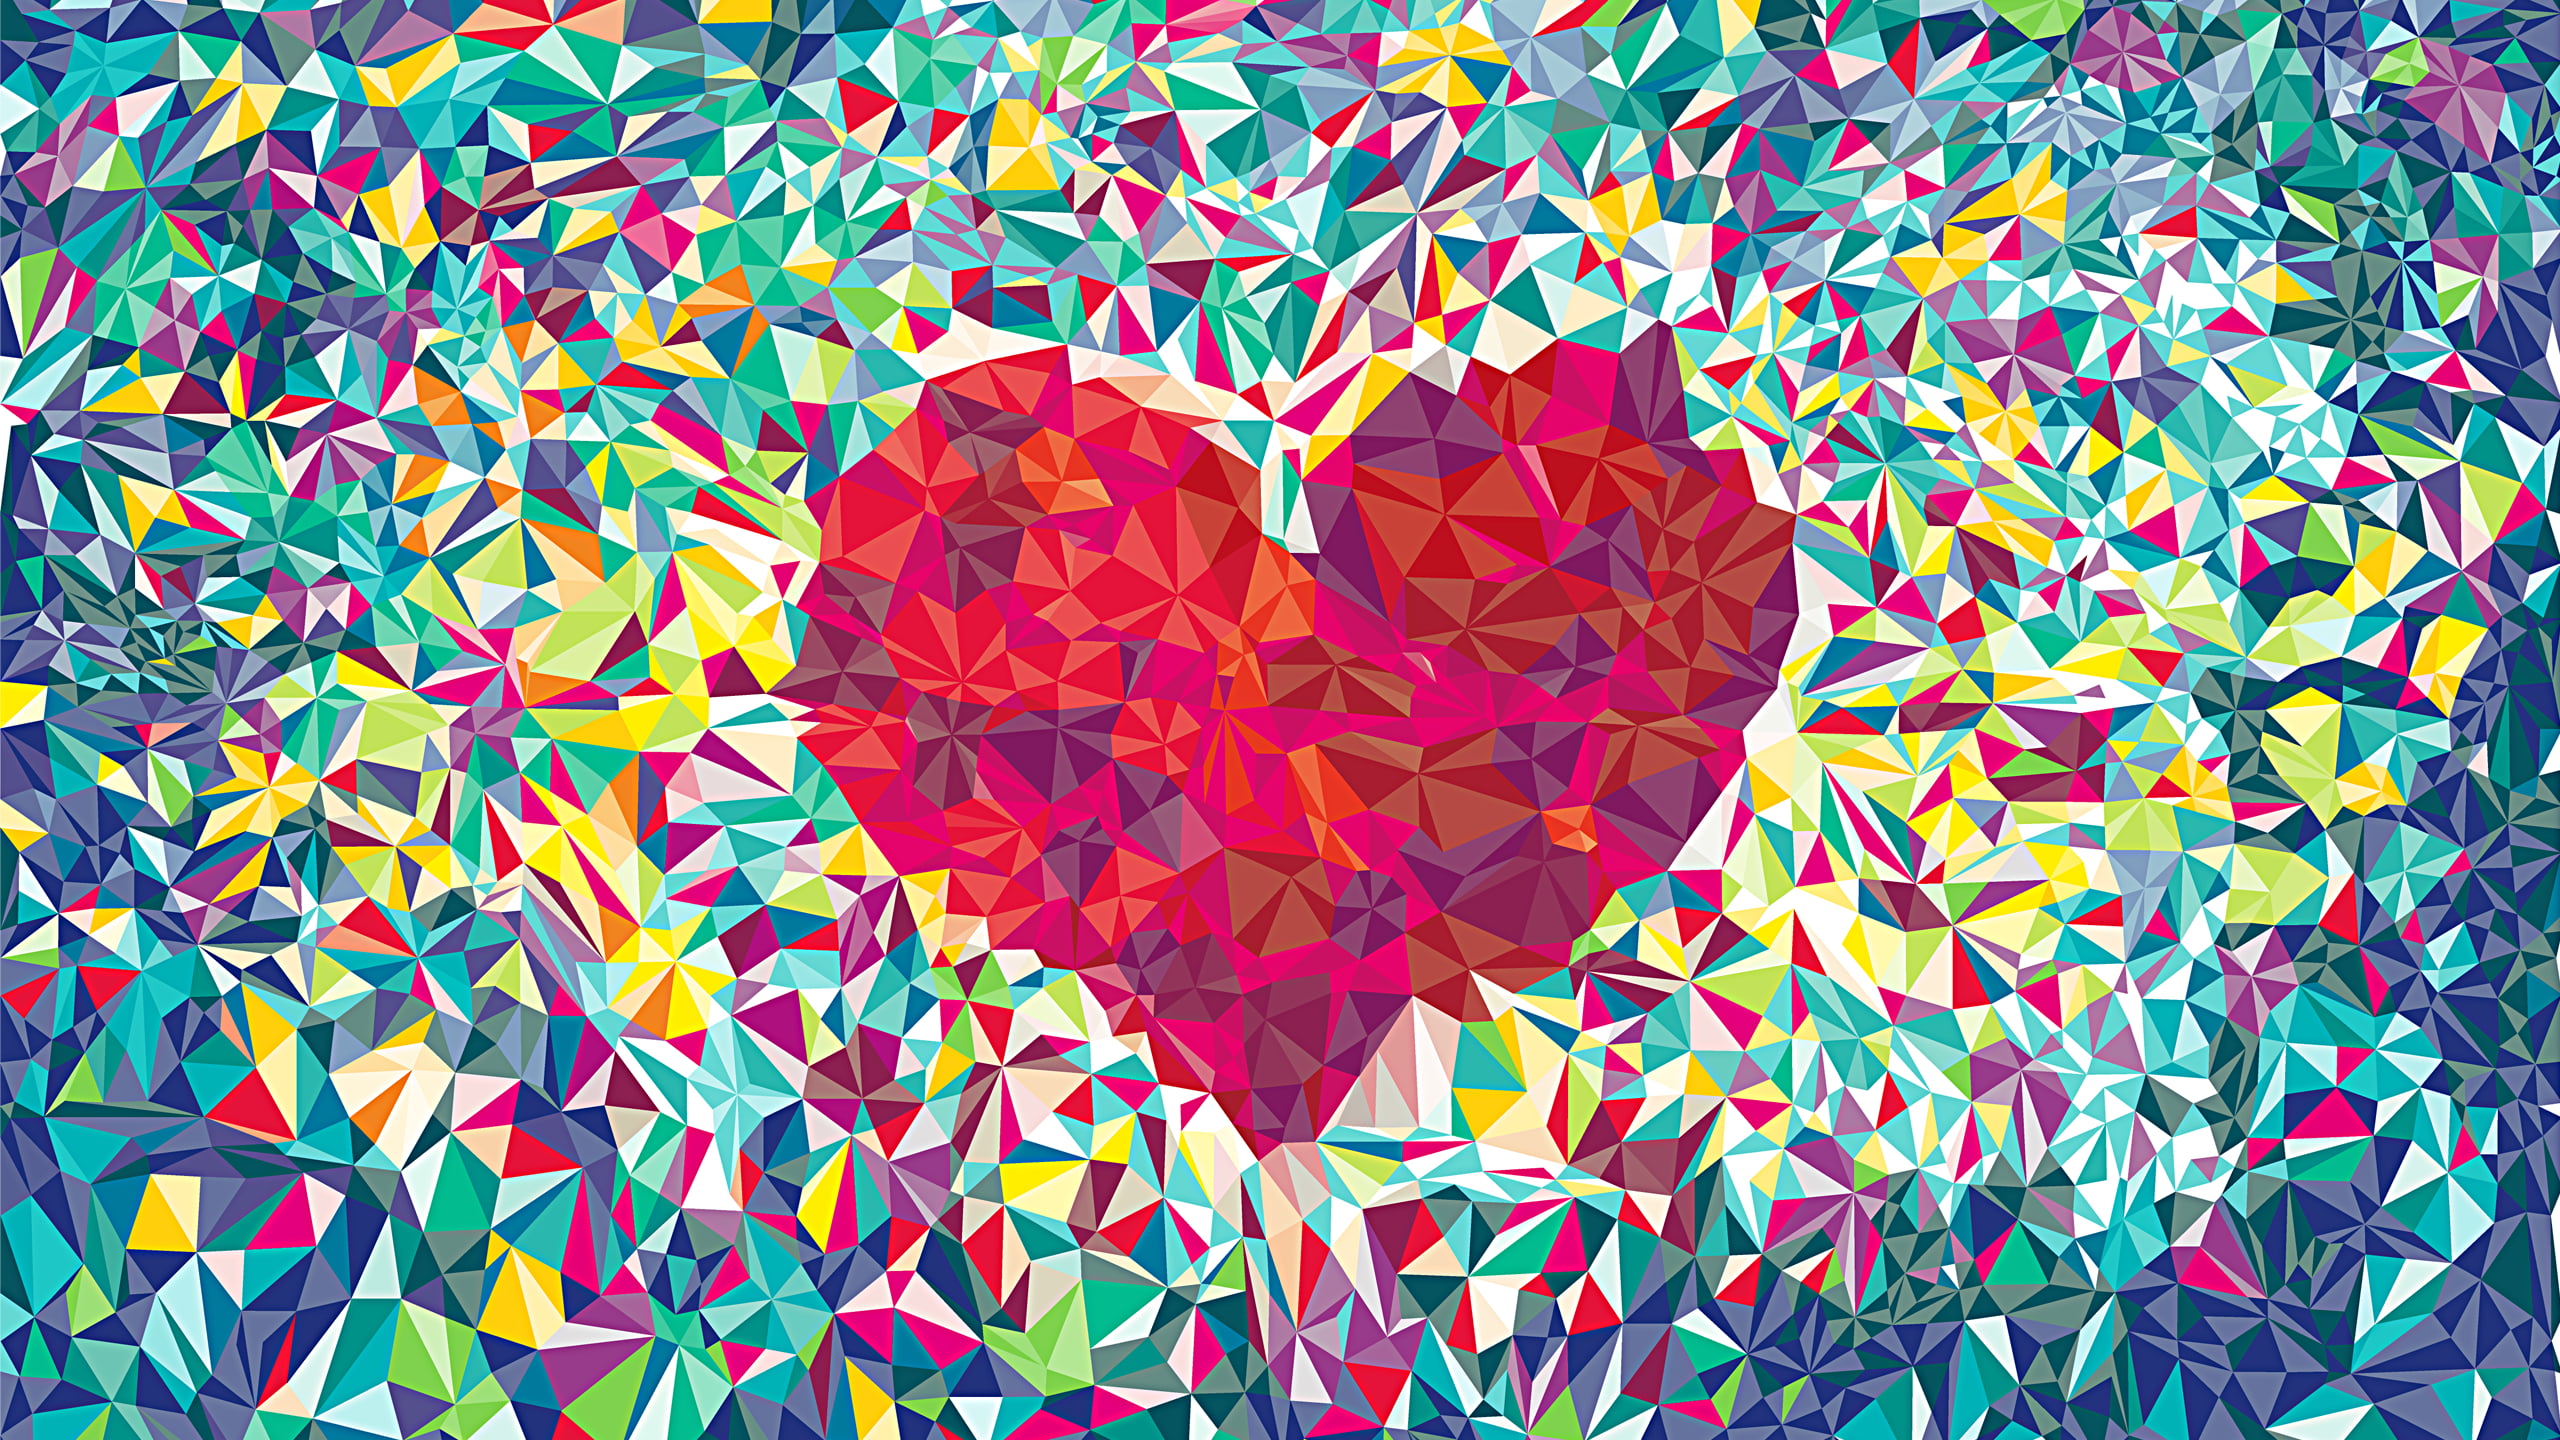 abstract heart wallpaper